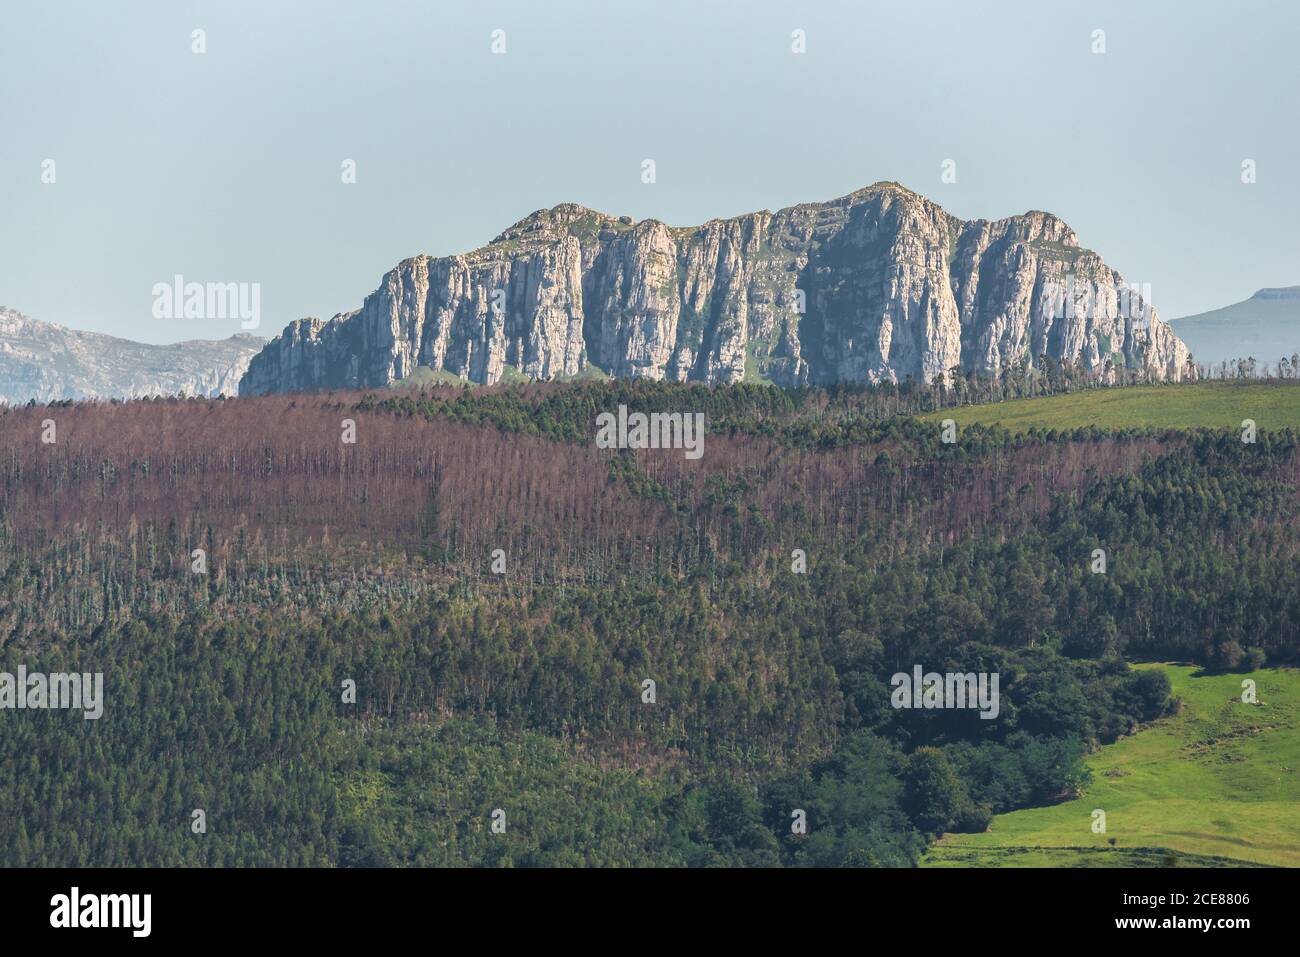 Paysage pittoresque de vallée de montagne avec forêt verte et prairies entouré de rochers majestueux sous un ciel bleu clair Banque D'Images